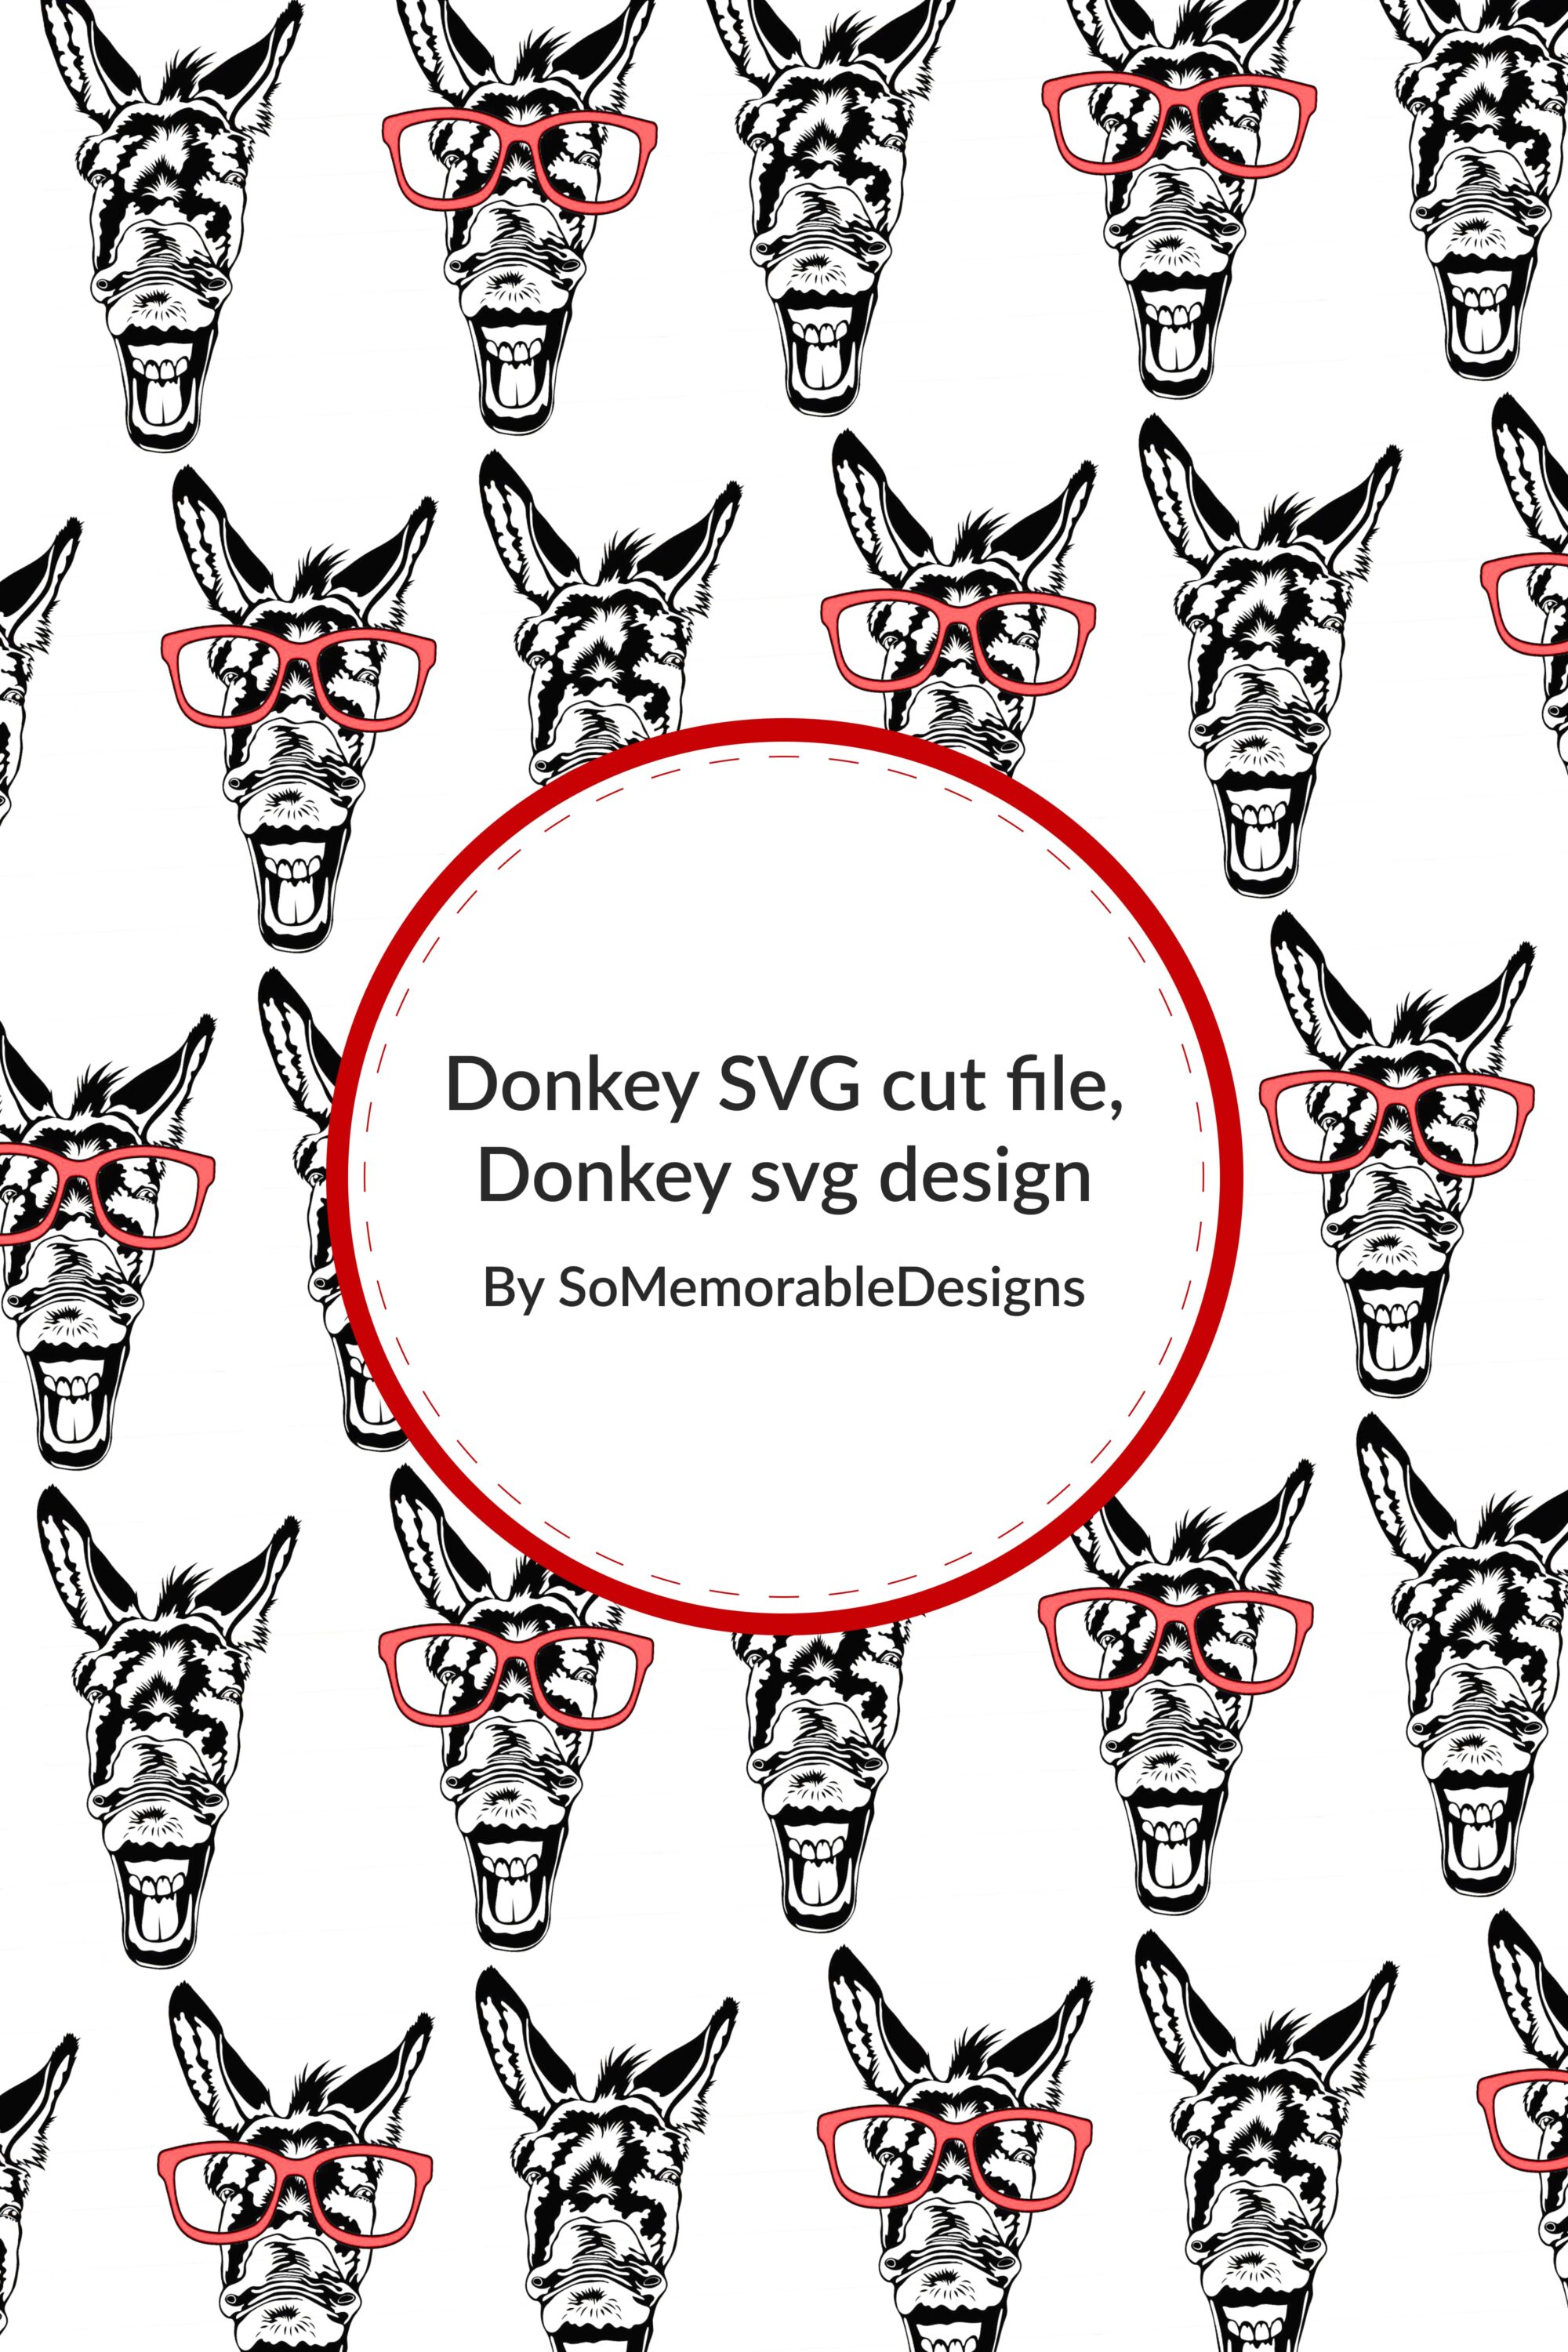 donkey svg cut file donkey svg design 03 877